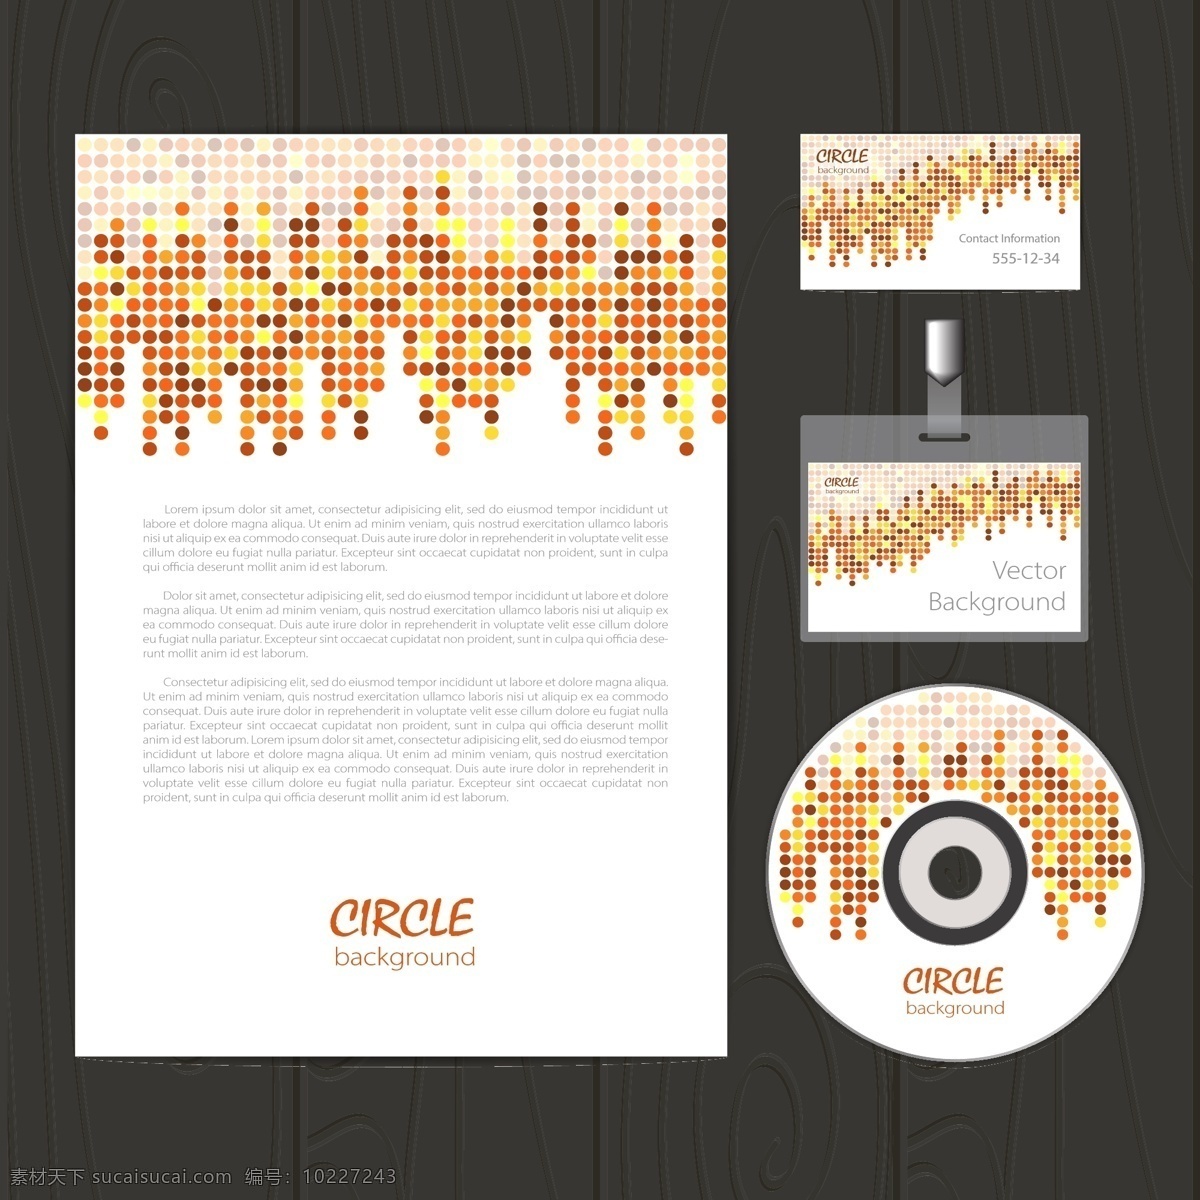 vi 光盘 封面设计 cd dvd封面 标签 工作证 光盘封面 光盘设计 卡片 名片 i设计 整体包装 矢量图